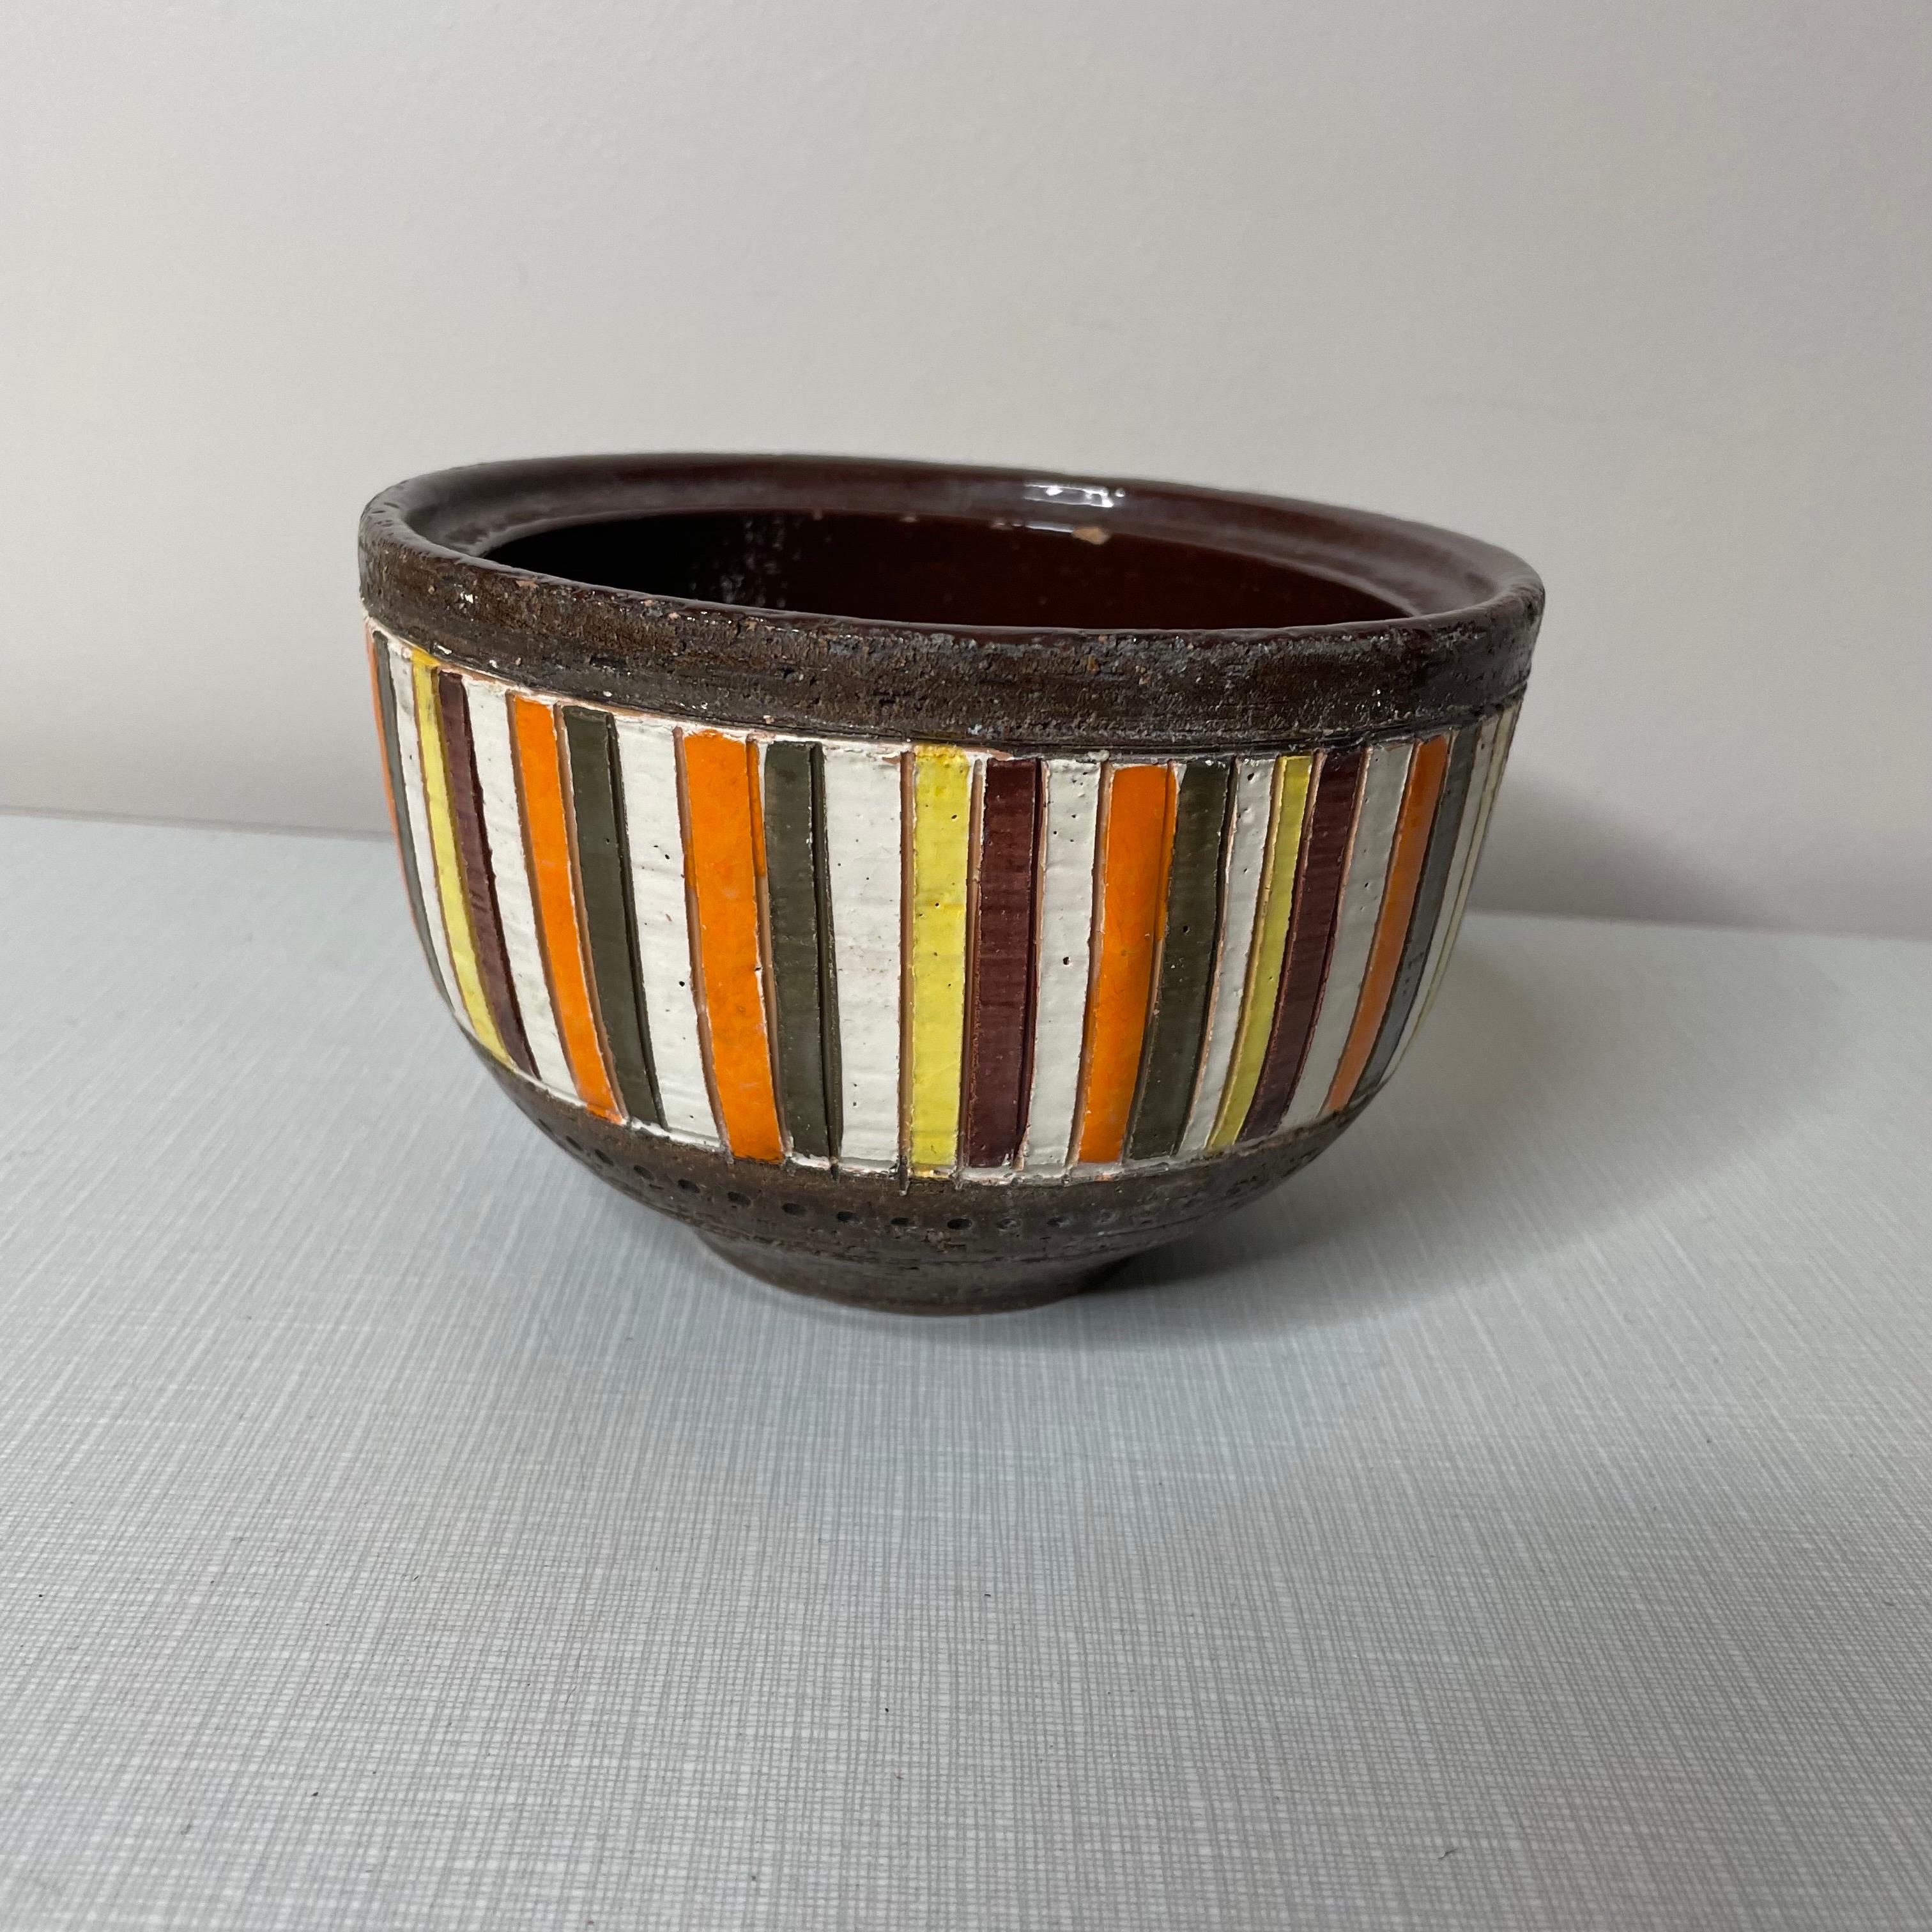 In Italien hergestellte Schale, Übertopf oder Auffangschale. Aus Keramik mit einer braunen Glasur auf der Ober- und Unterseite. Vertikale Streifen in orange, gelb, weiß und einer Art olivbraunem Farbton. Signiert auf dem Sockel, behält auch die